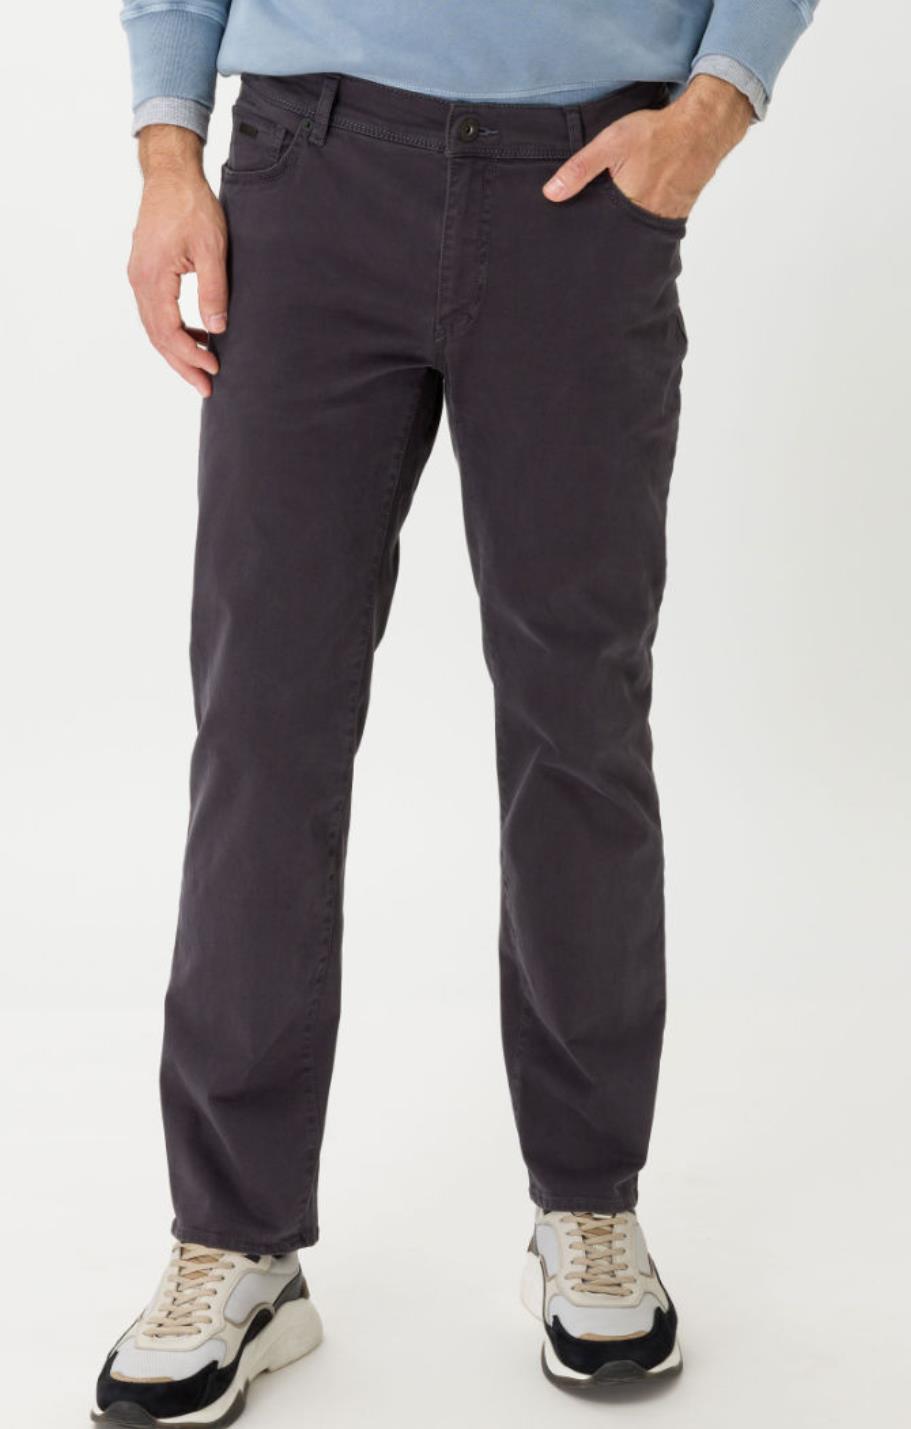 Brax bukse modell Cadiz i mørk grå